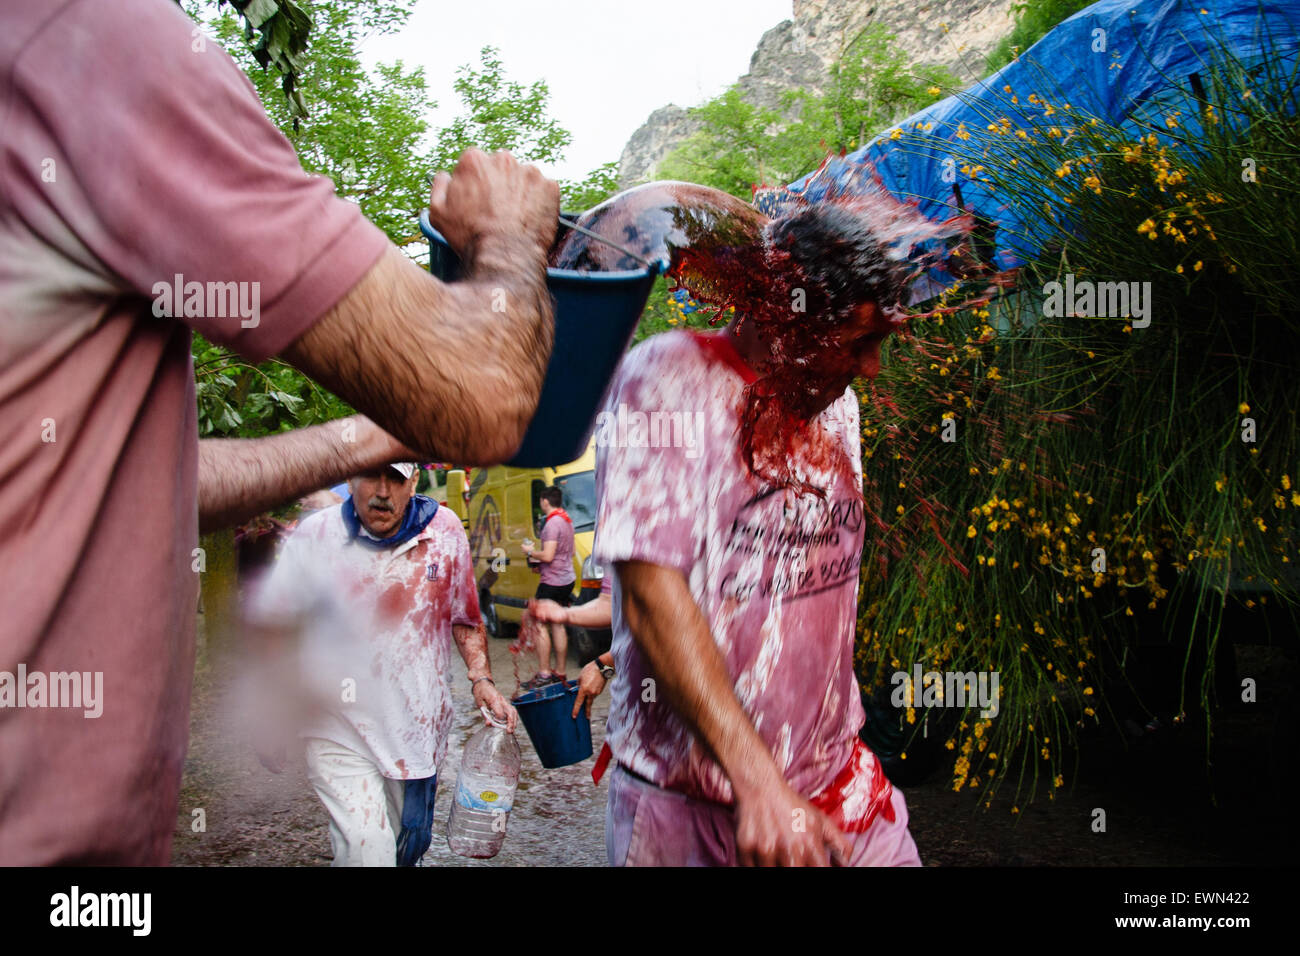 Riscos de Bilibio, Haro, La Rioja, Spanien. 29. Juni 2015. Nachtschwärmer in Haro Wein Schlacht jährlich am St.-Peter Tag statt. Stockfoto